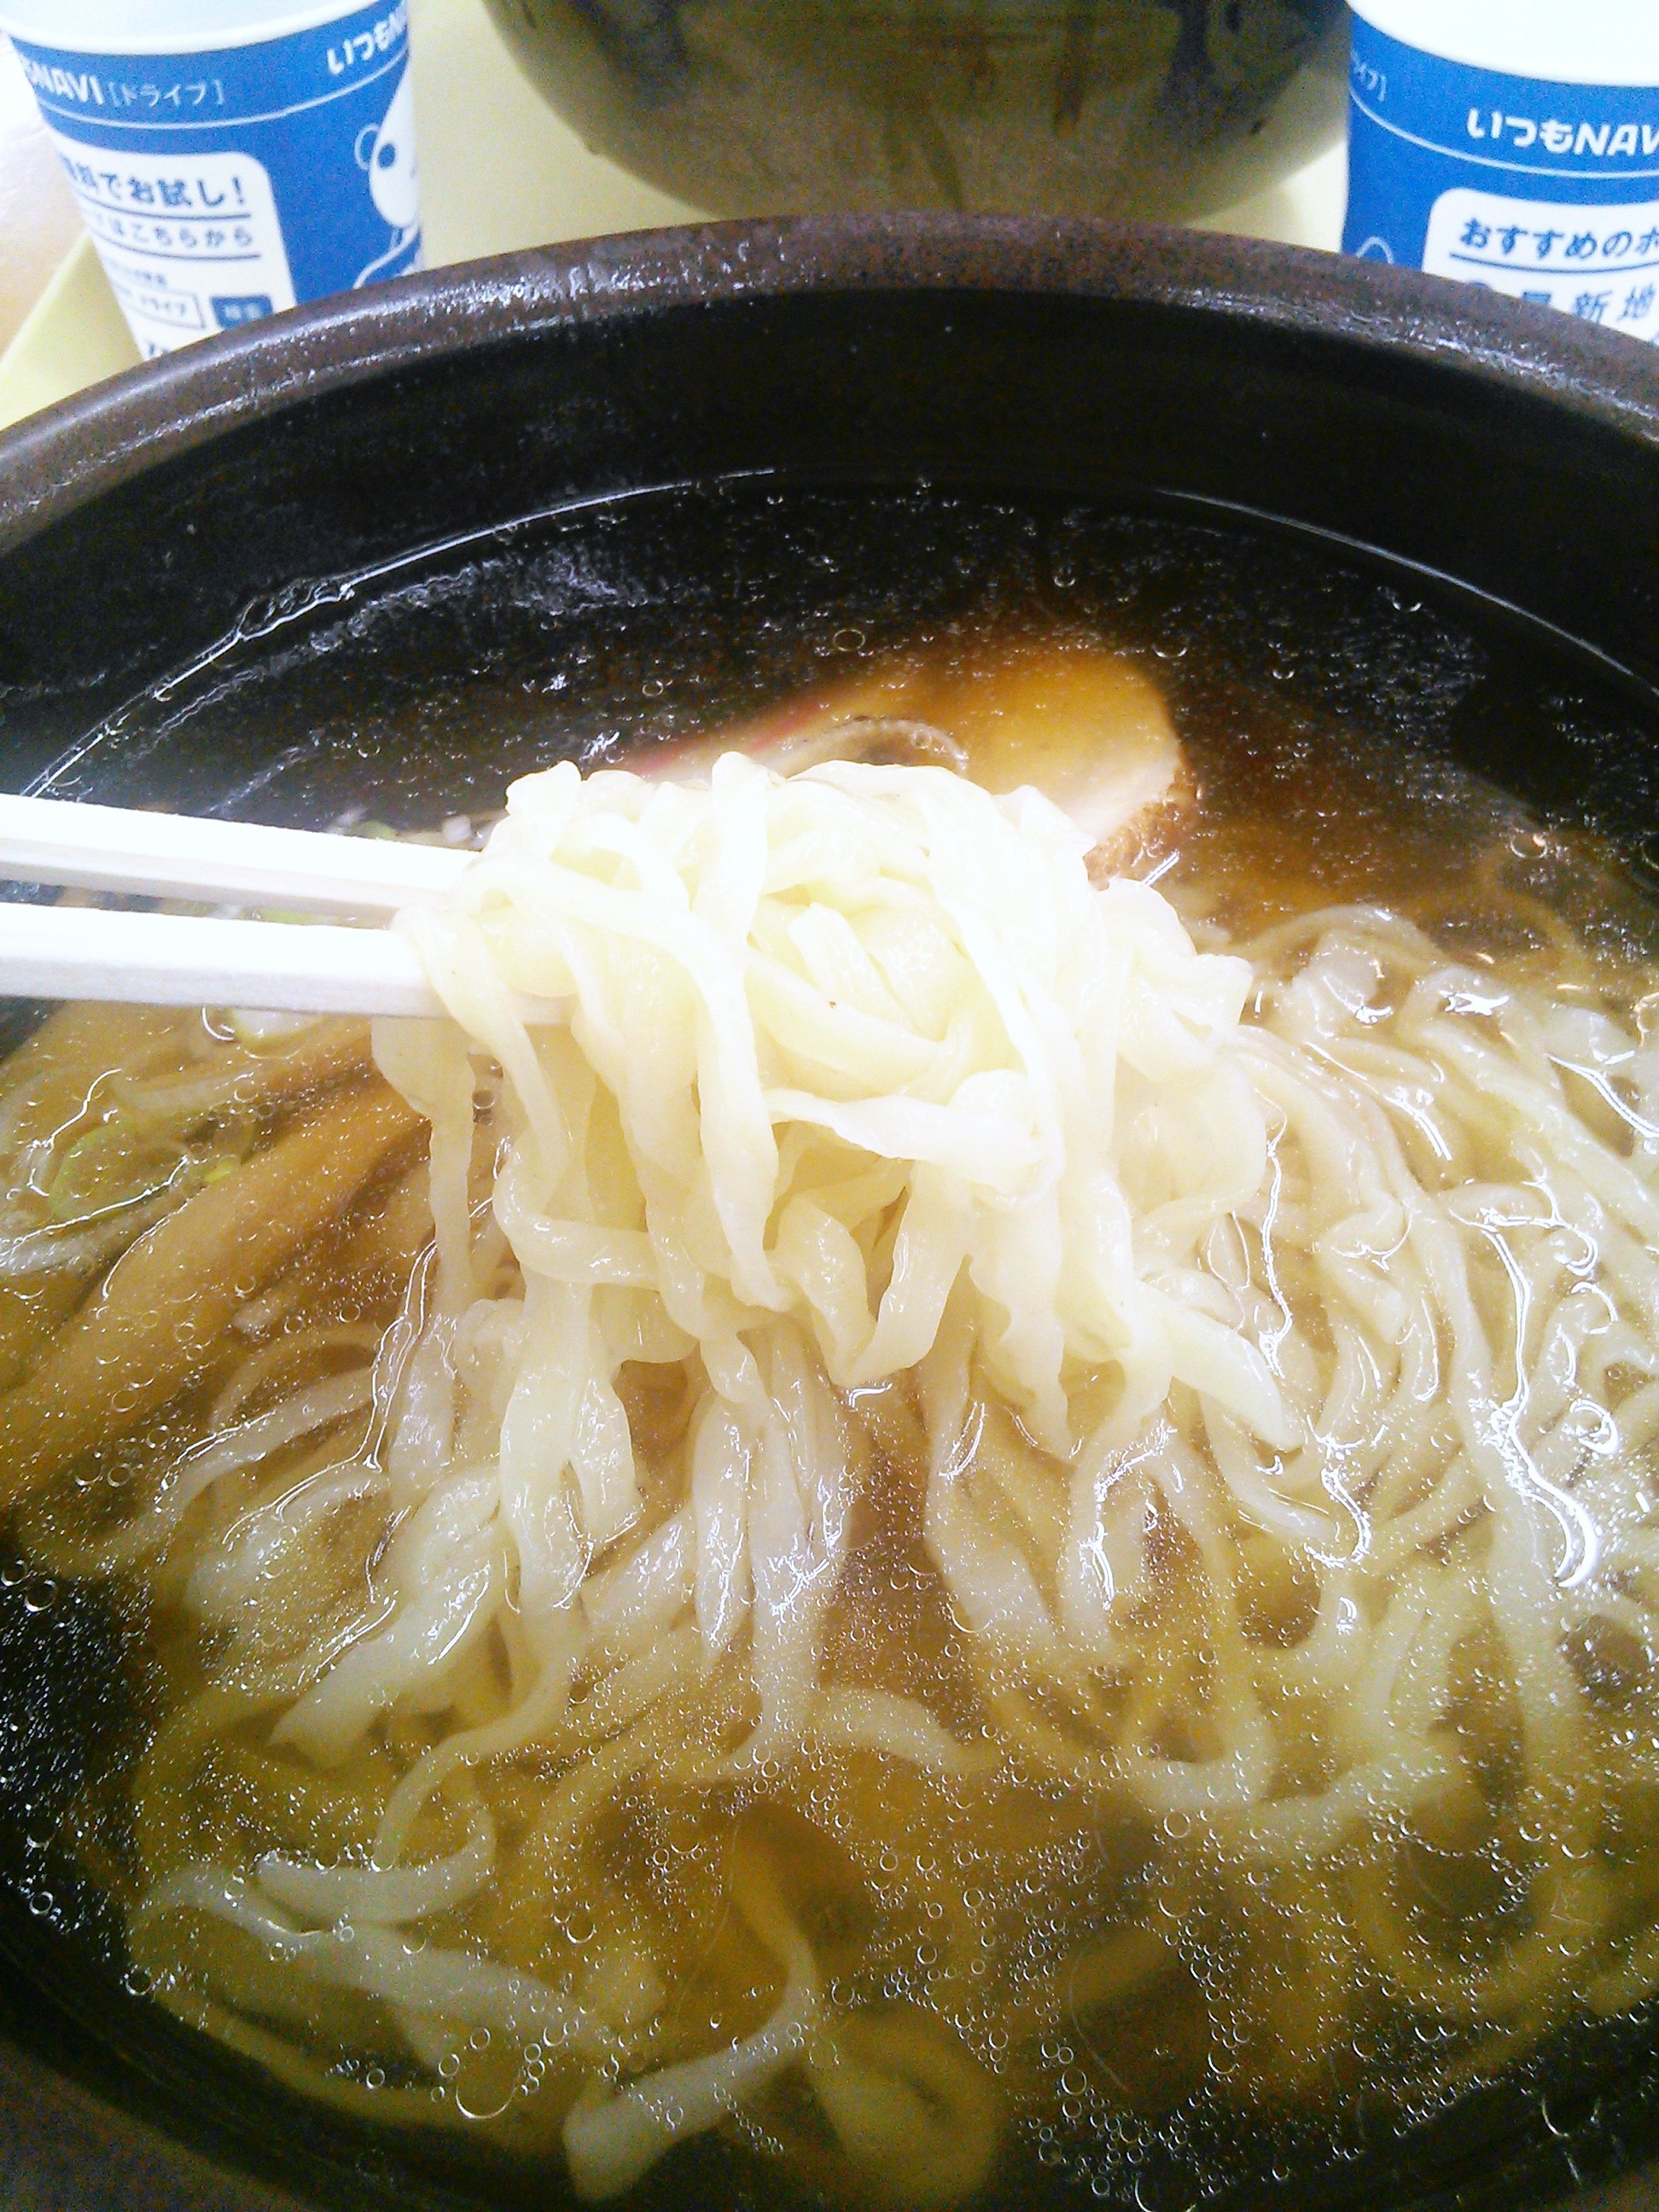 佐野サービスエリアで食べた佐野ラーメンの麺は青竹打ちの縮れ麺